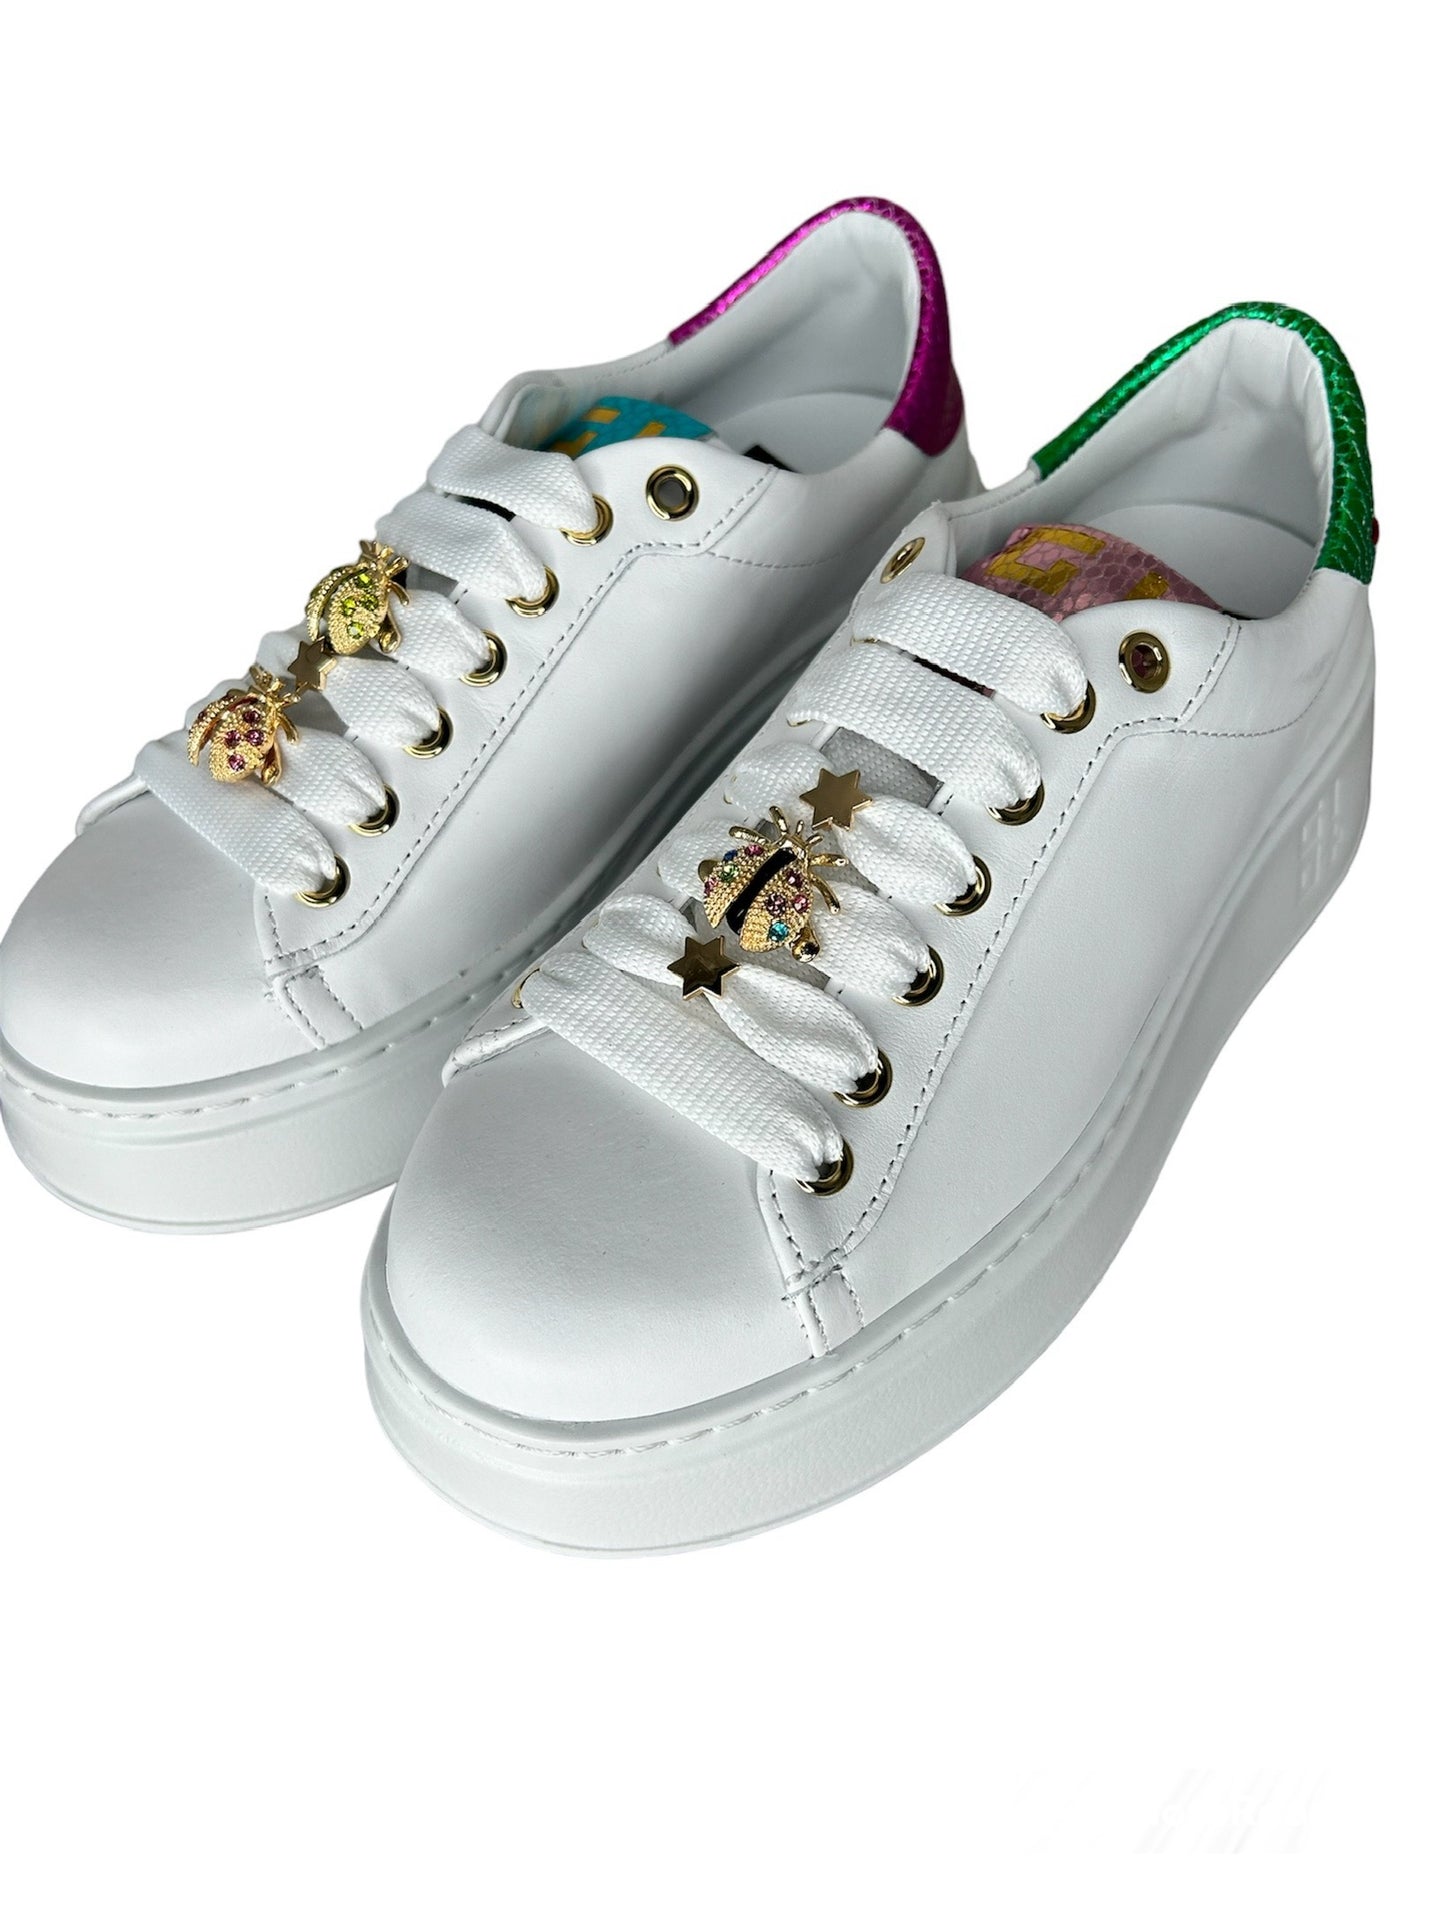 Gio+ Sneakers white viperina coccinelle